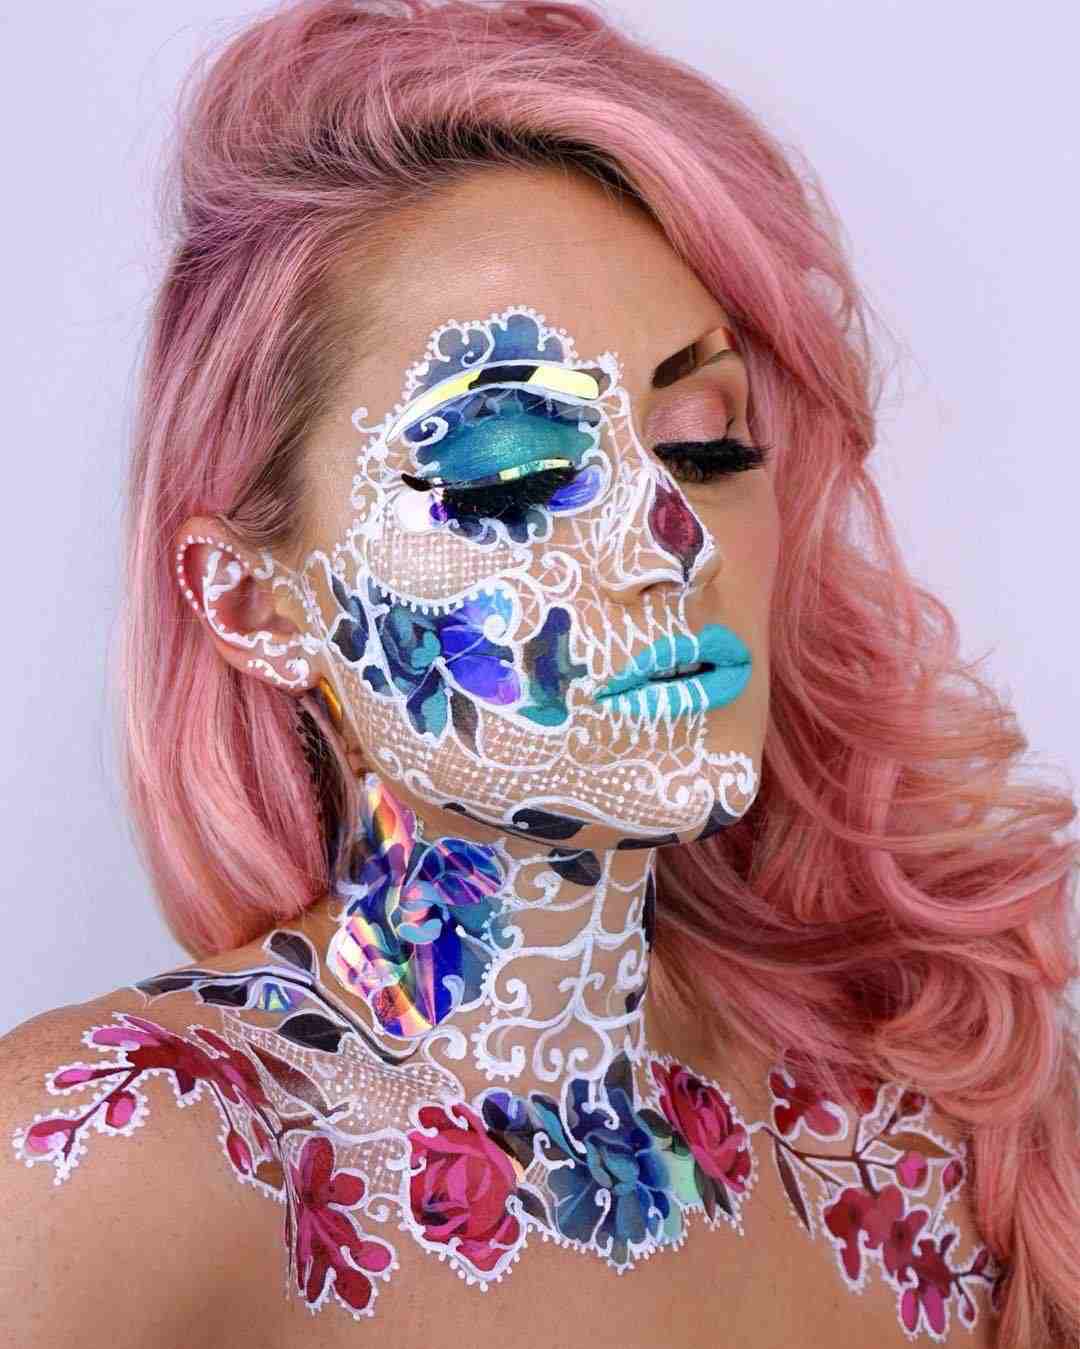 Waldfee zu Halloween schminken Karneval Make up für Frauen